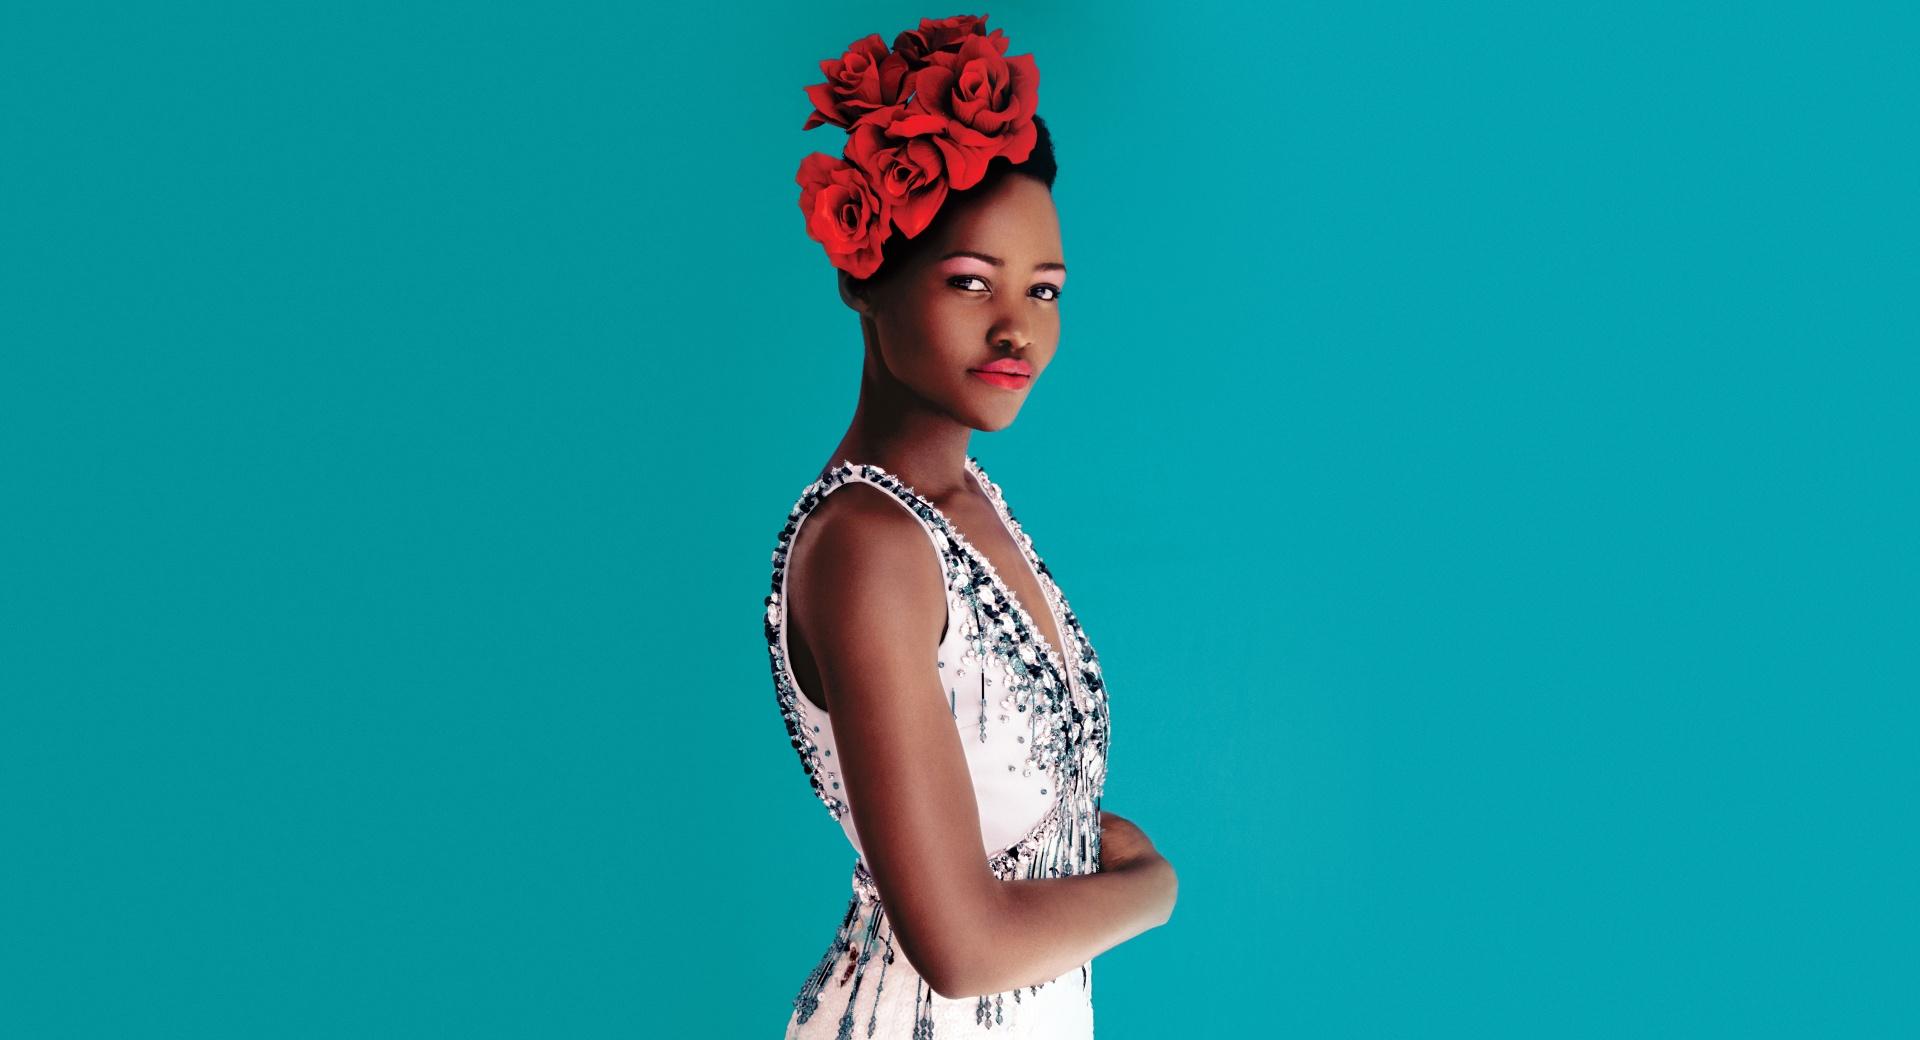 Lupita Nyongo Dress at 1024 x 768 size wallpapers HD quality